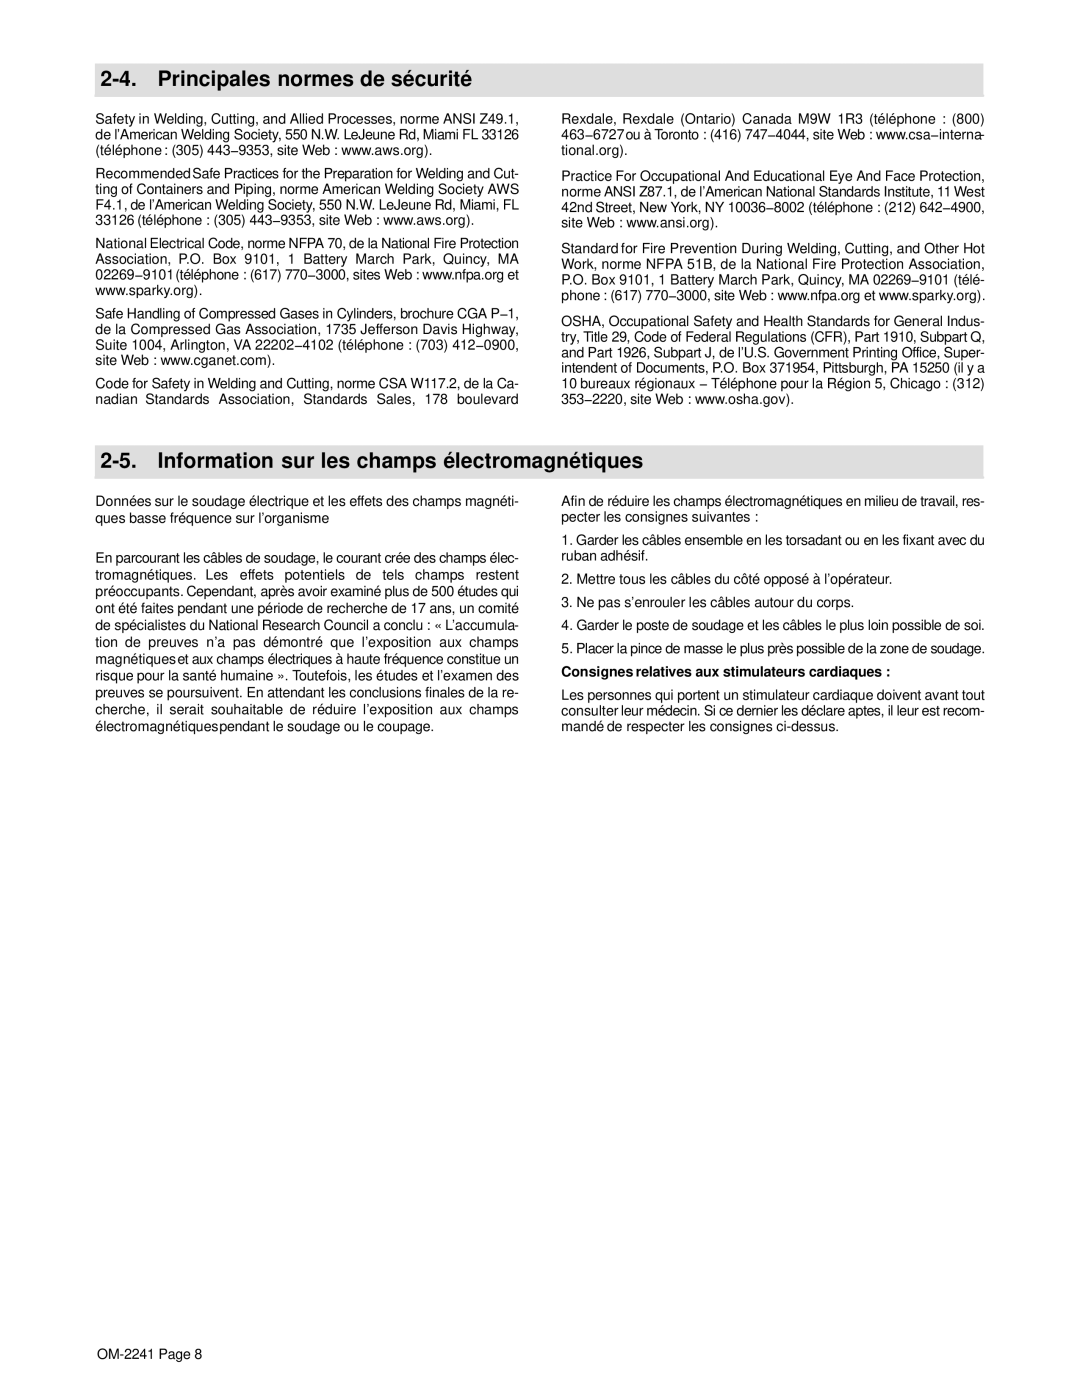 Miller Electric OM-2241 manual Principales normes de sécurité, Information sur les champs électromagnétiques 